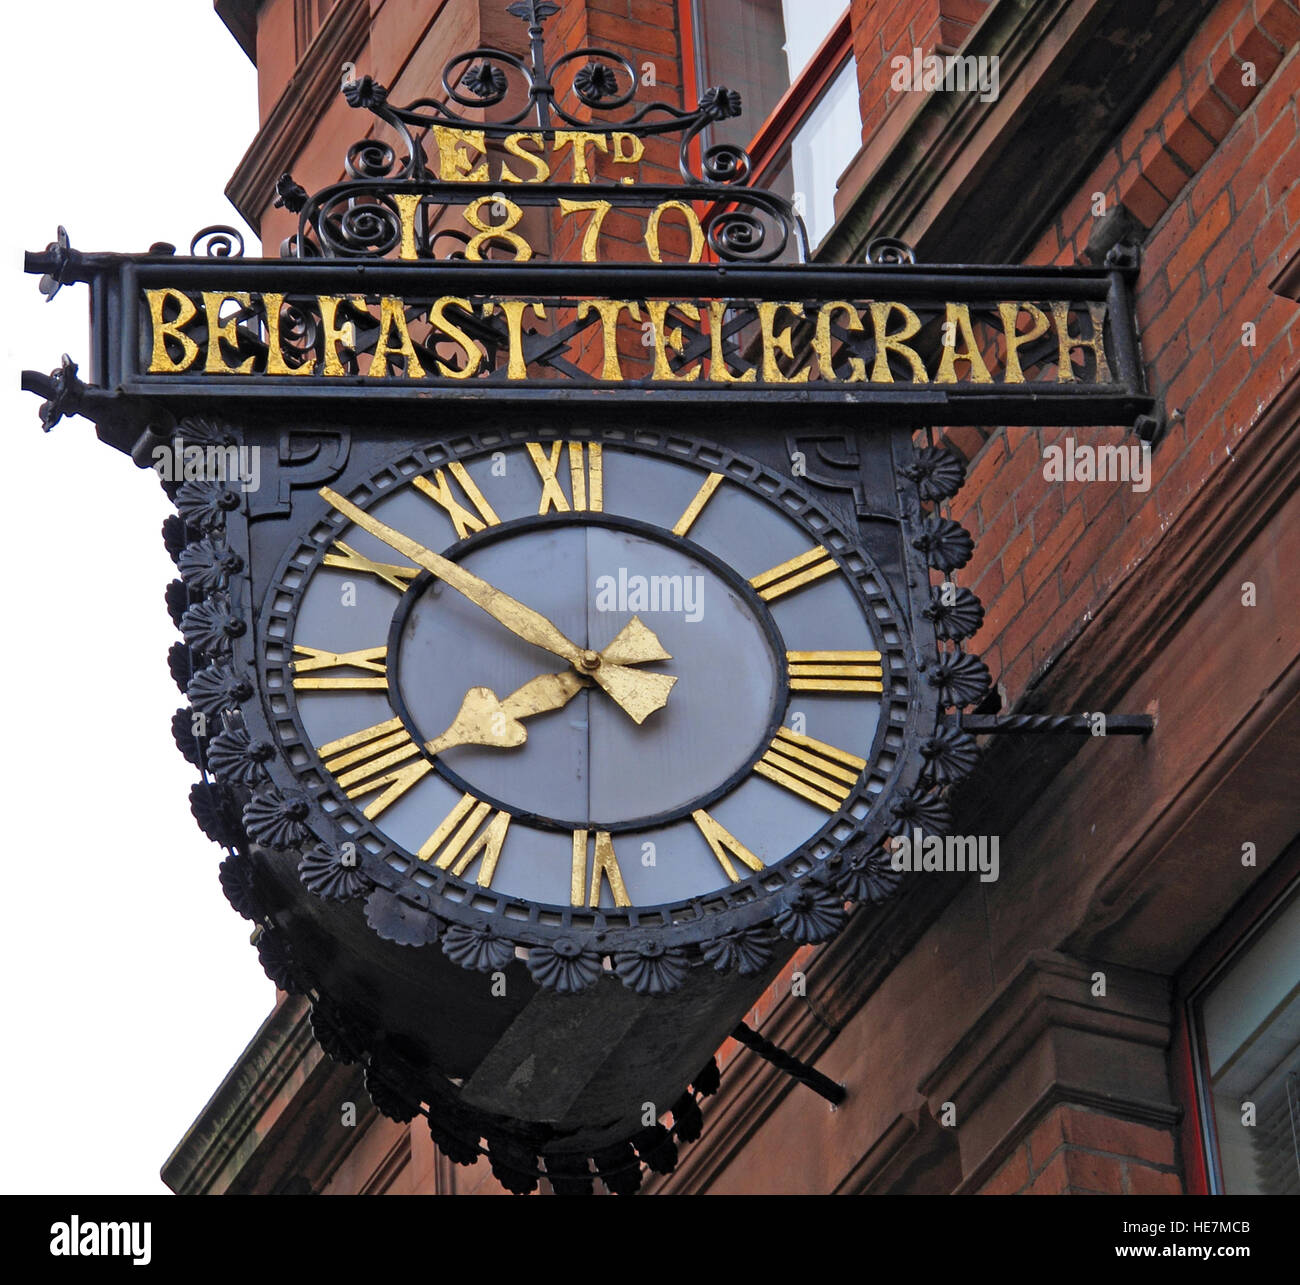 Belfast Telegraph,estd 1870,l'orologio,Belfast Telegraph House,33 Clarendon Road,Belfast, Irlanda del Nord, Regno Unito Foto Stock